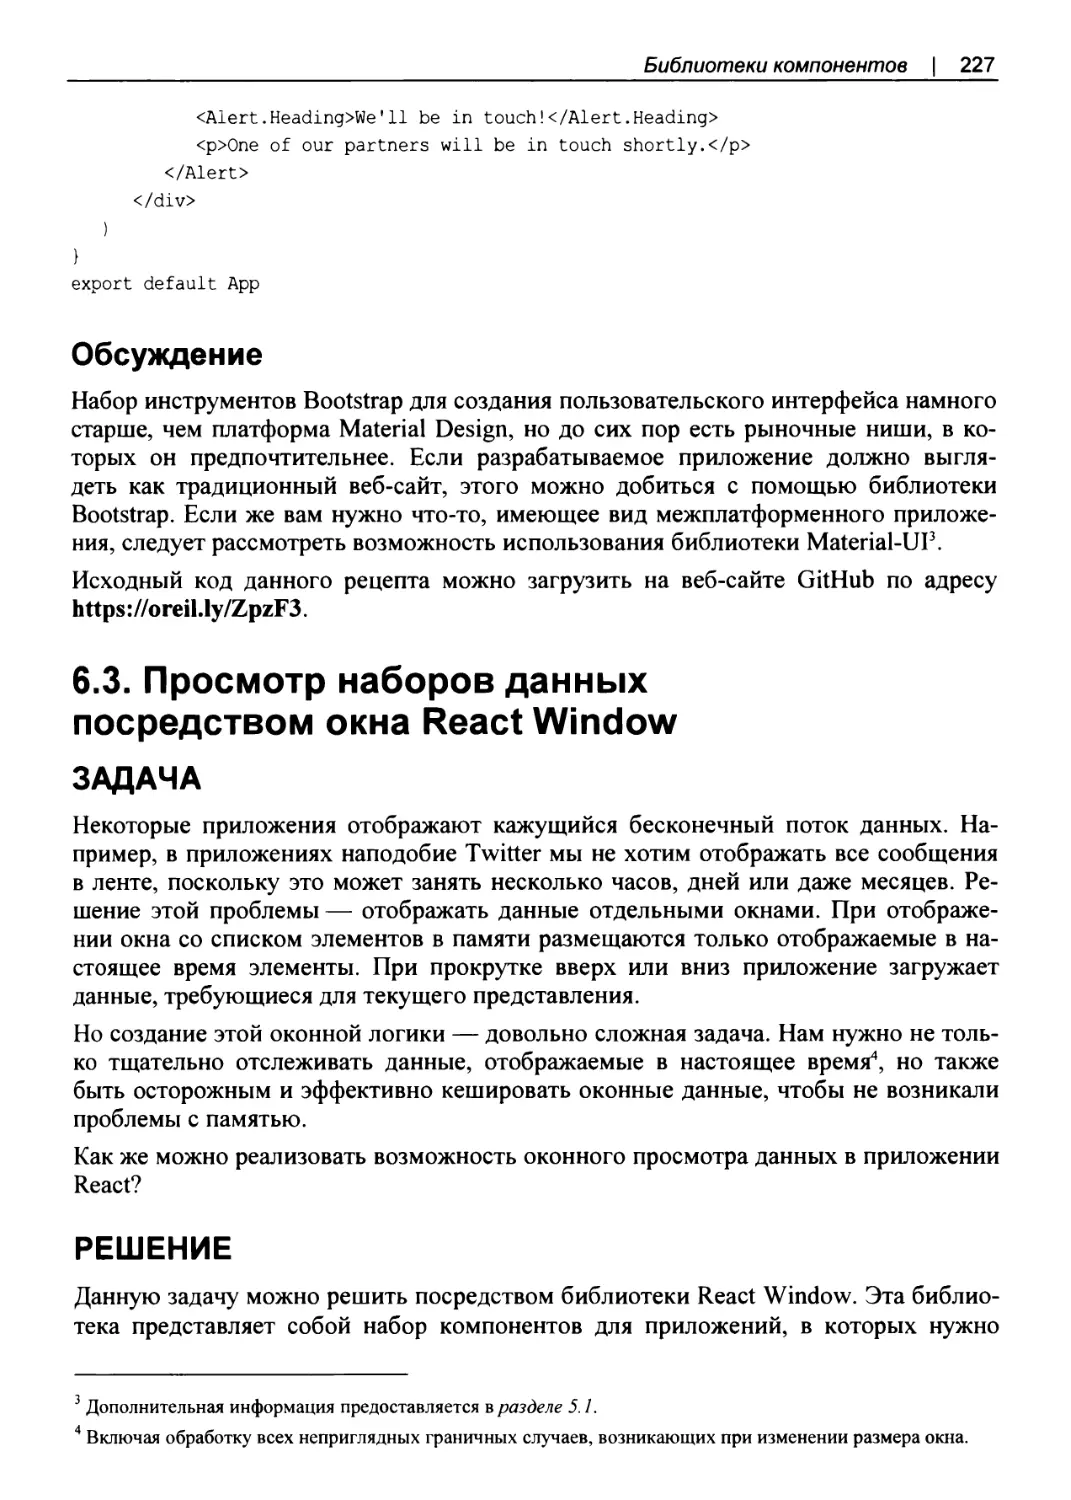 Обсуждение
6.3. Просмотр наборов данных посредством окна React Window
РЕШЕНИЕ